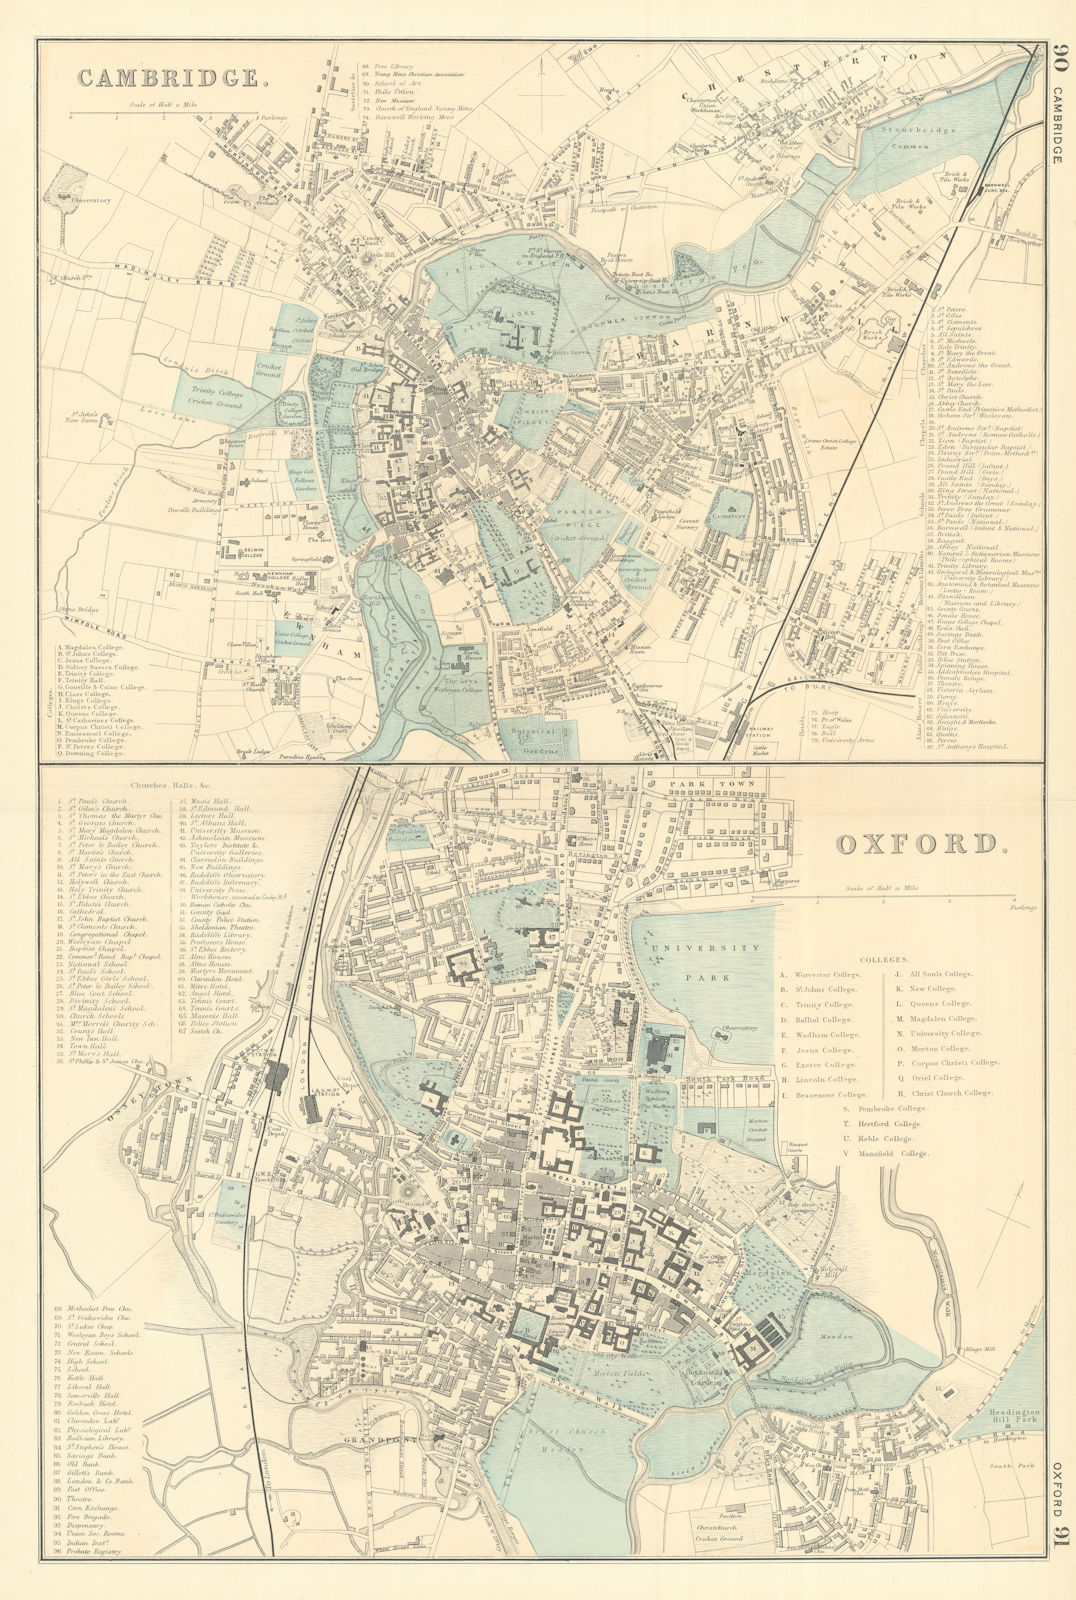 CAMBRIDGE & OXFORD antique town city plans University Colleges. BACON 1891 map